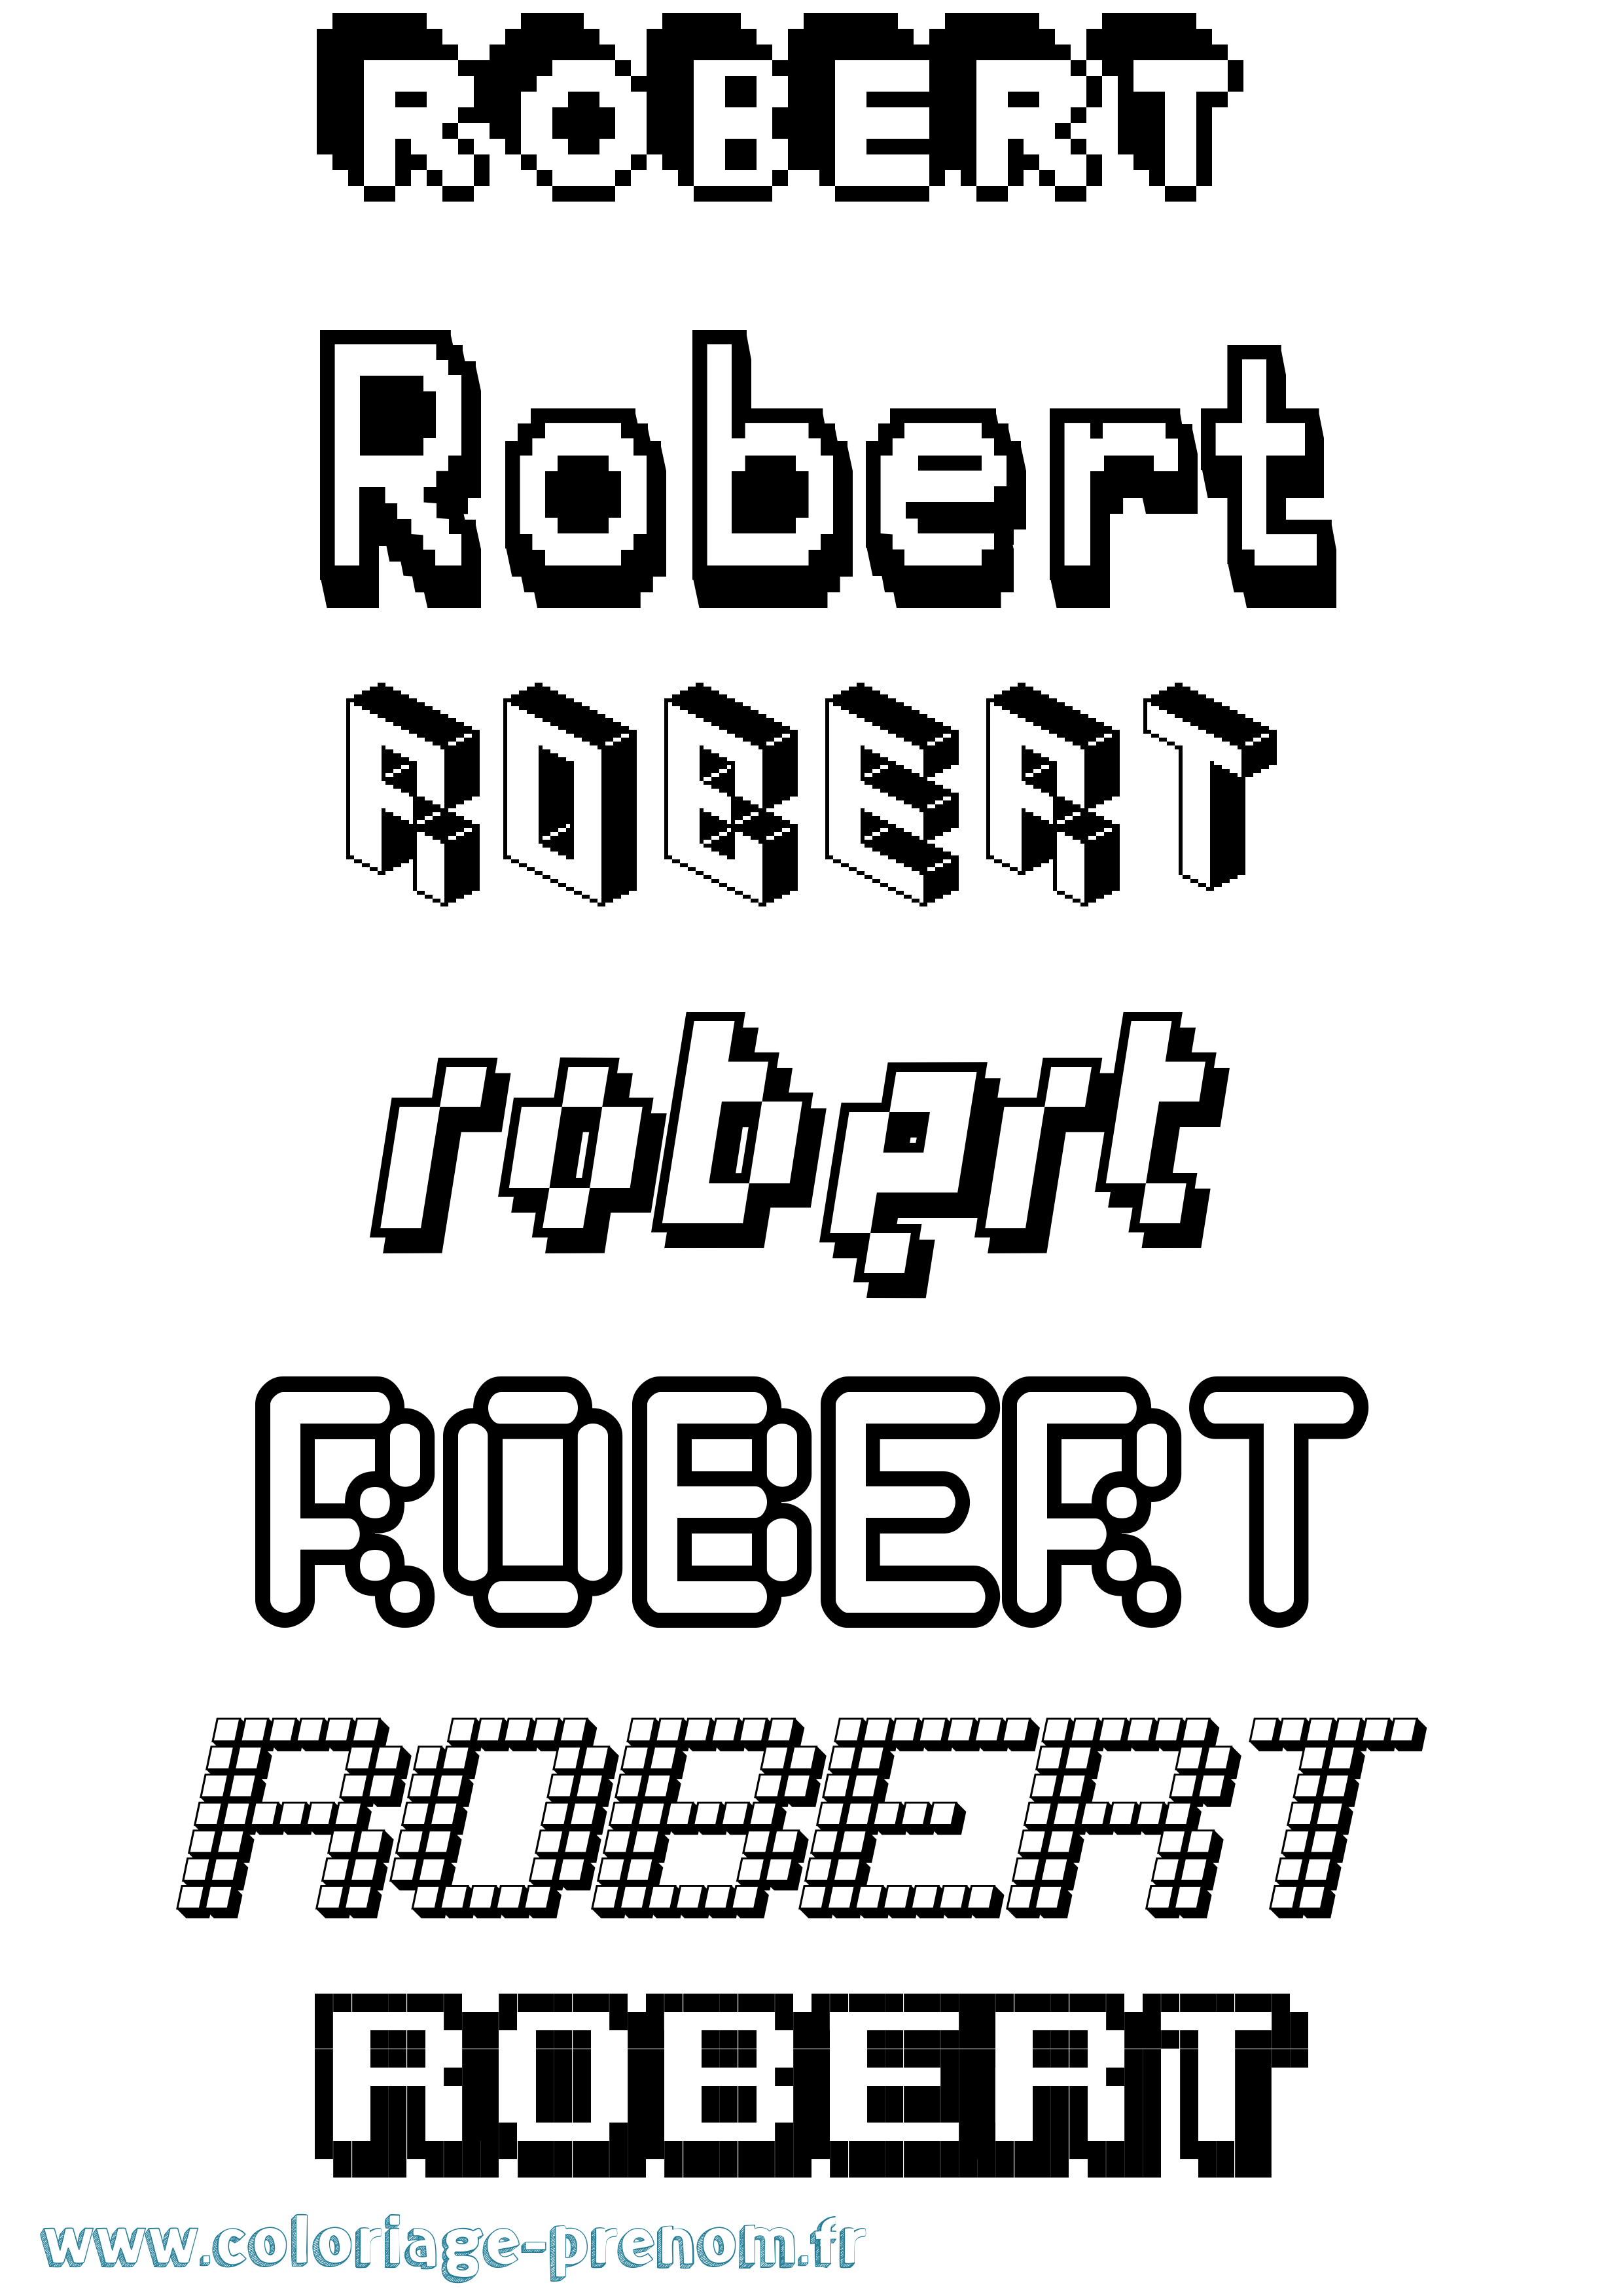 Coloriage prénom Robert Pixel